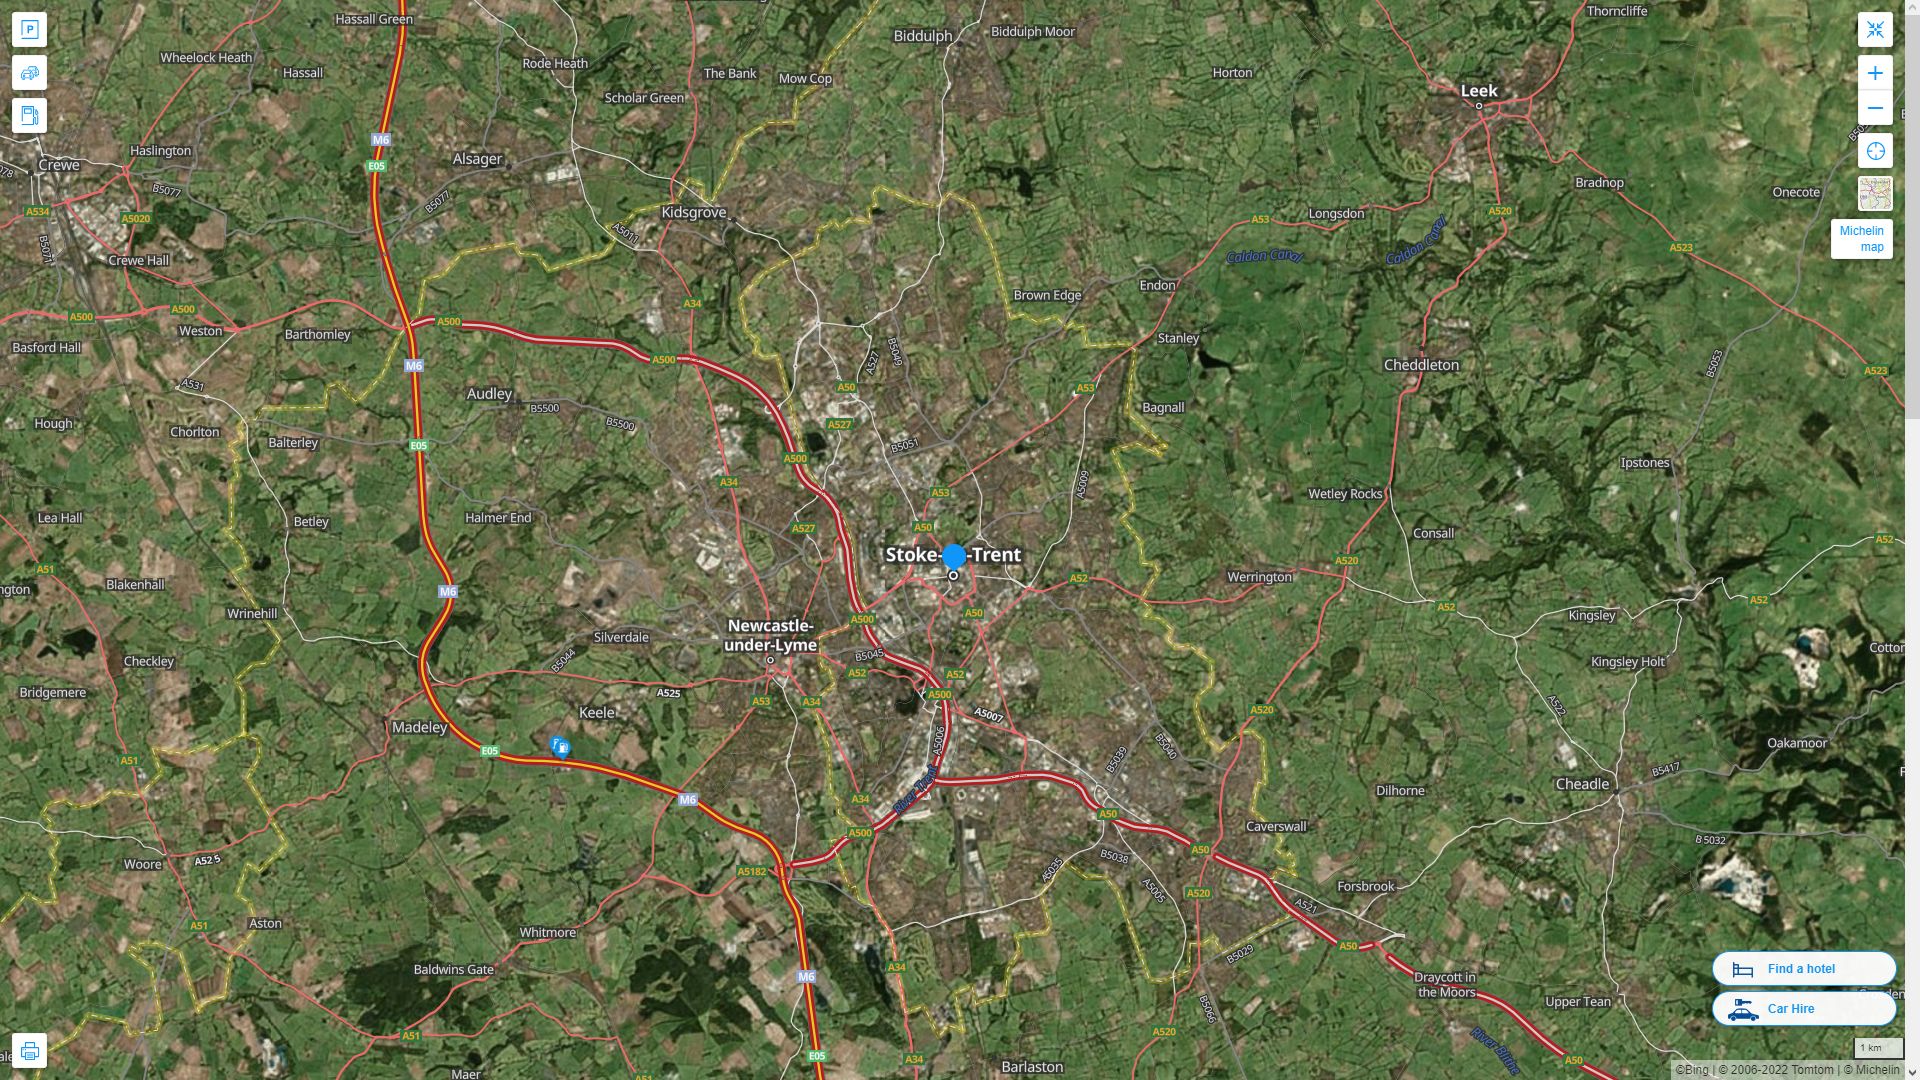 Stoke on Trent Royaume Uni Autoroute et carte routiere avec vue satellite